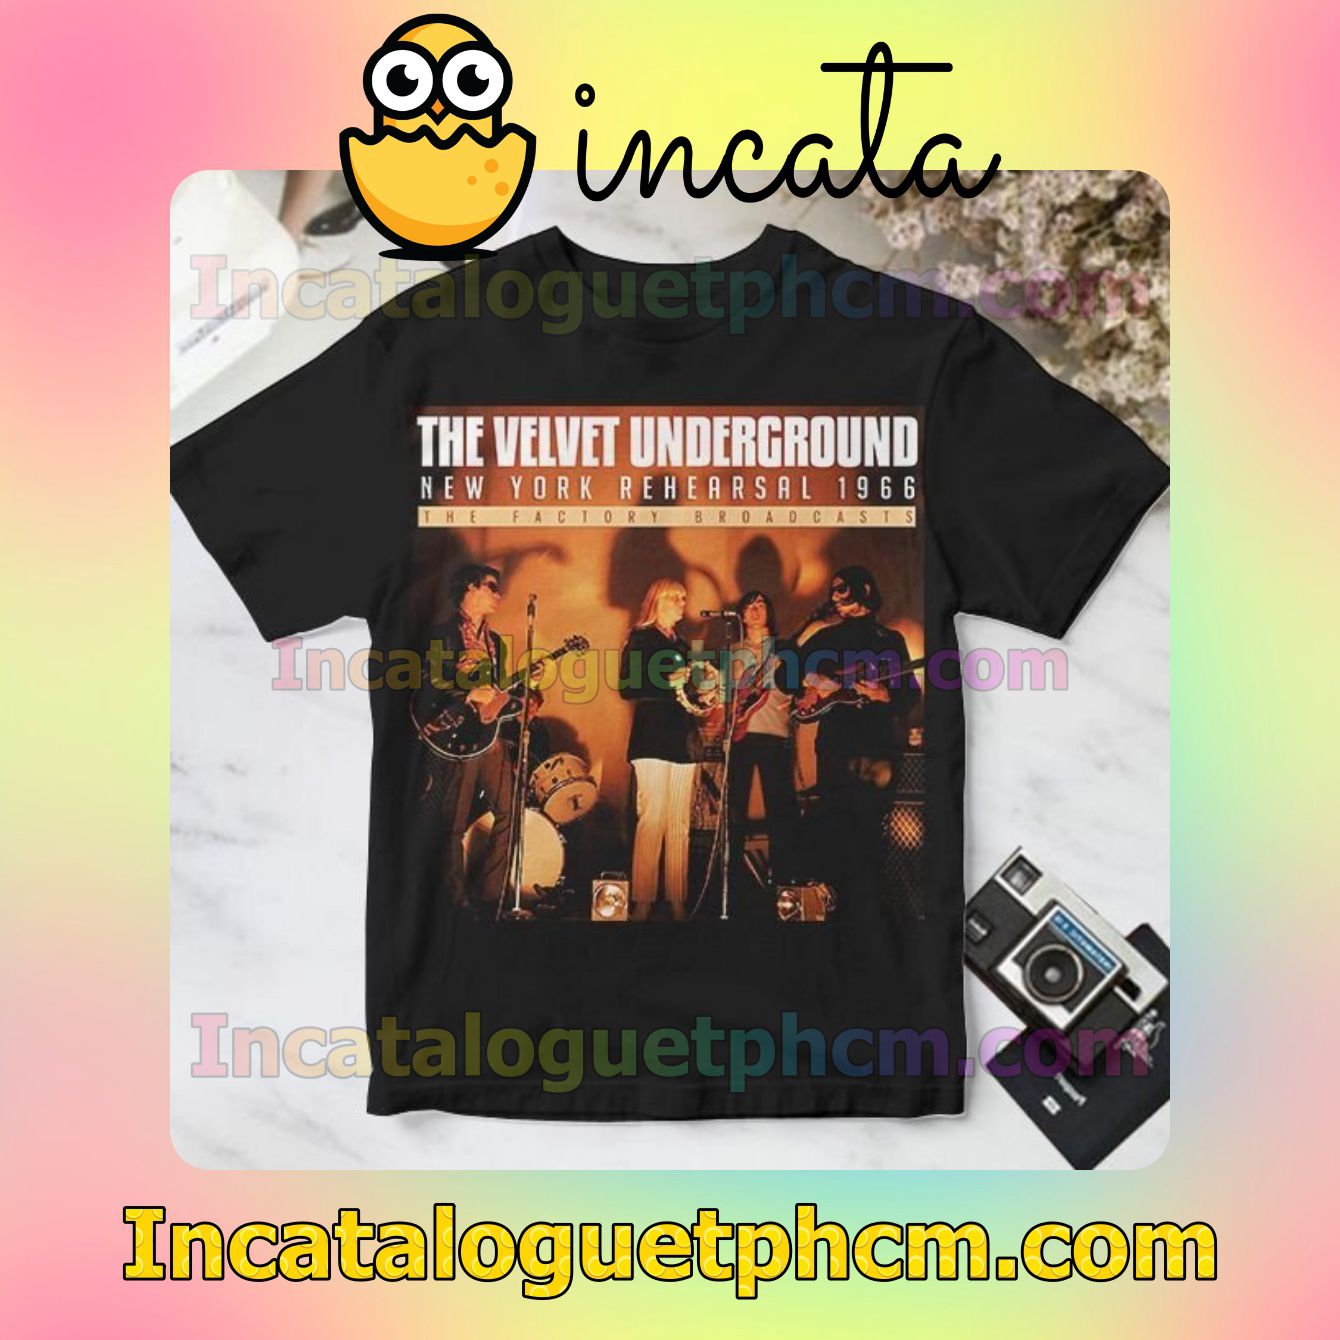 The Velvet Underground New York Rehearsal 1966 Album Cover Black Personalized Shirt